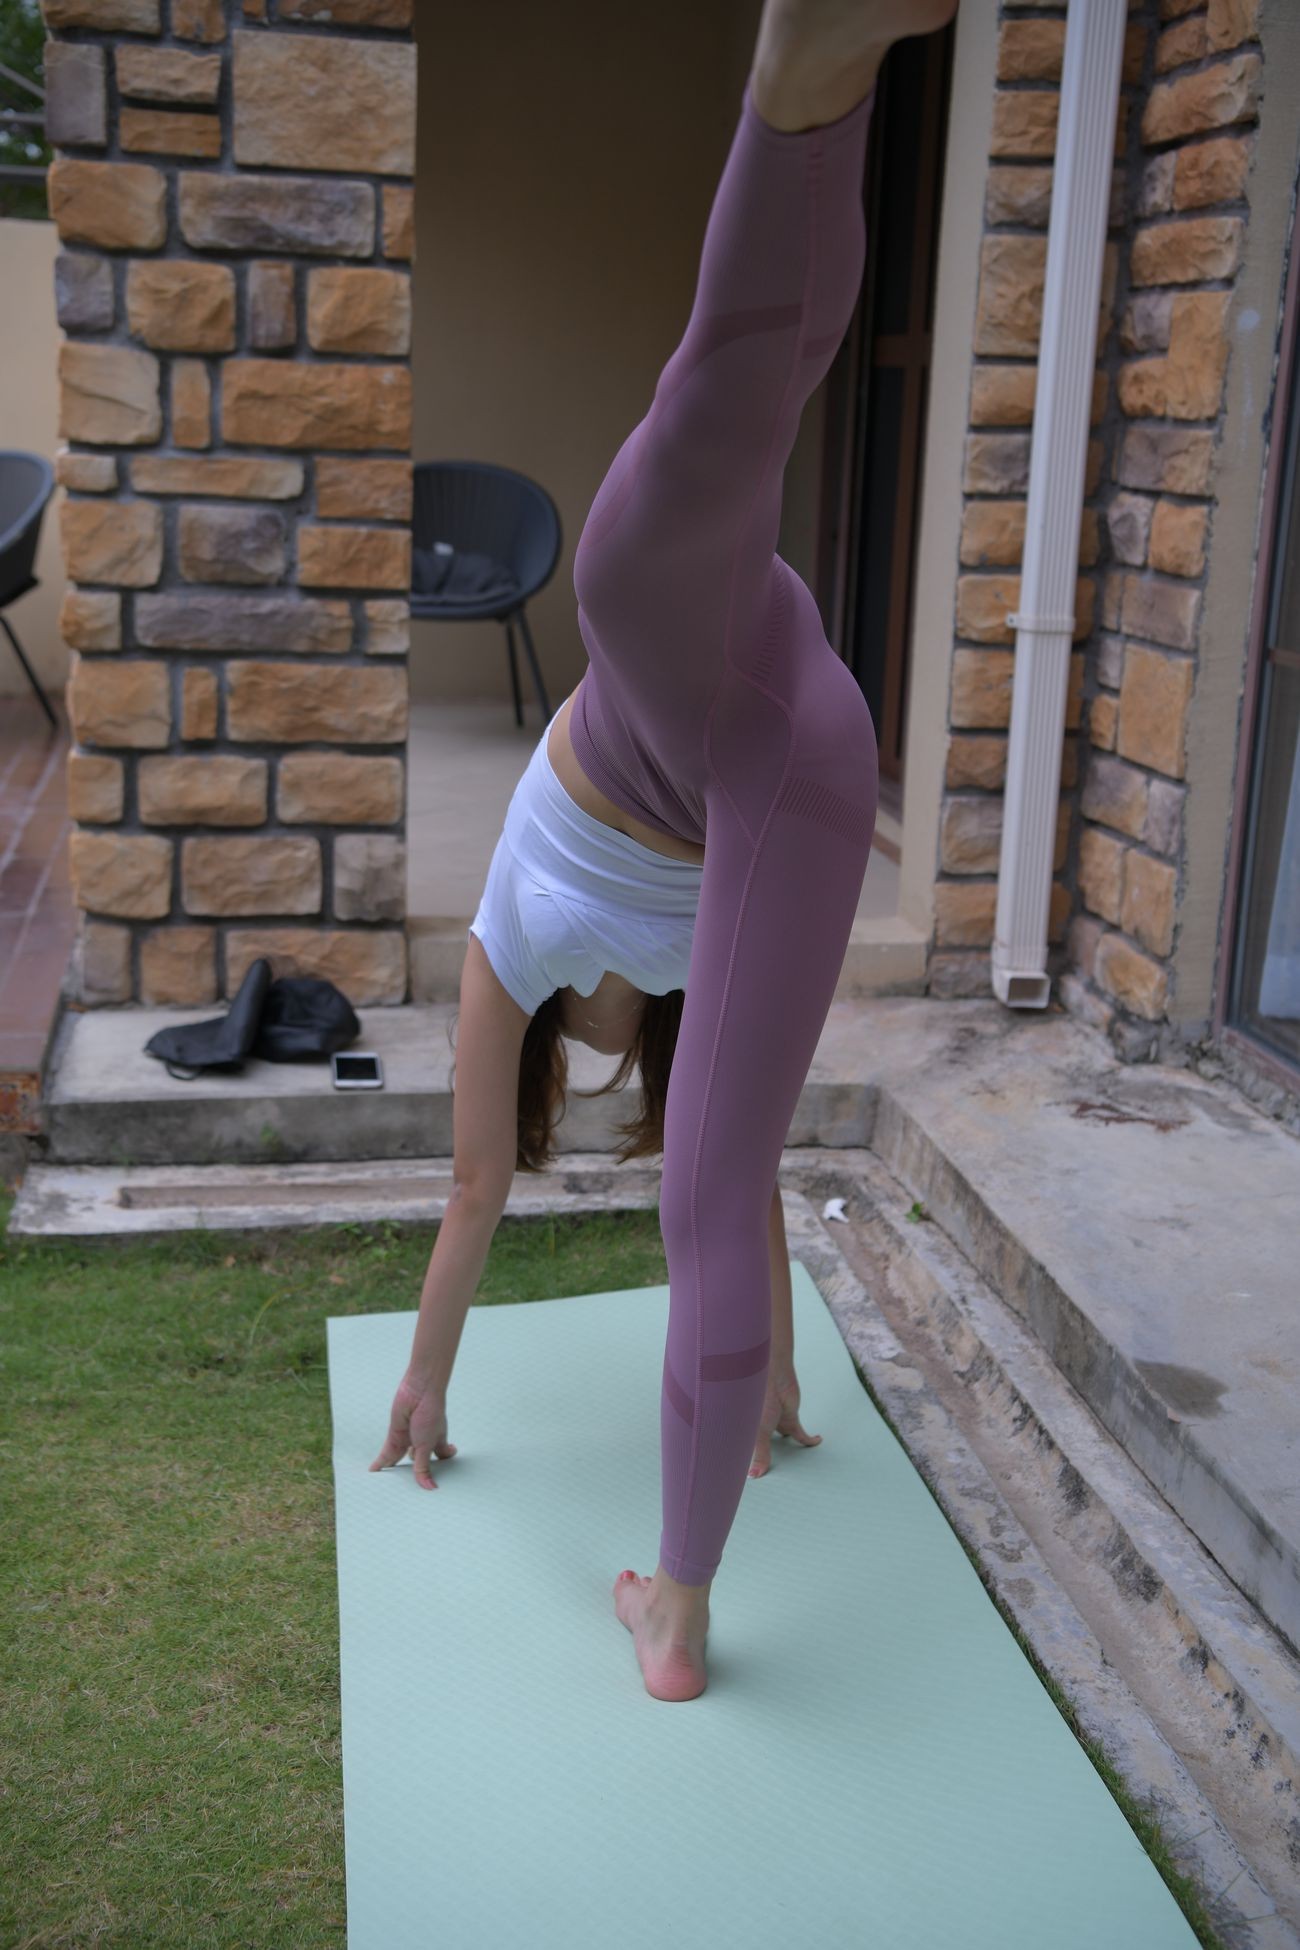 一只麋鹿旅拍摄影作品紫色瑜伽裤美女 (3)